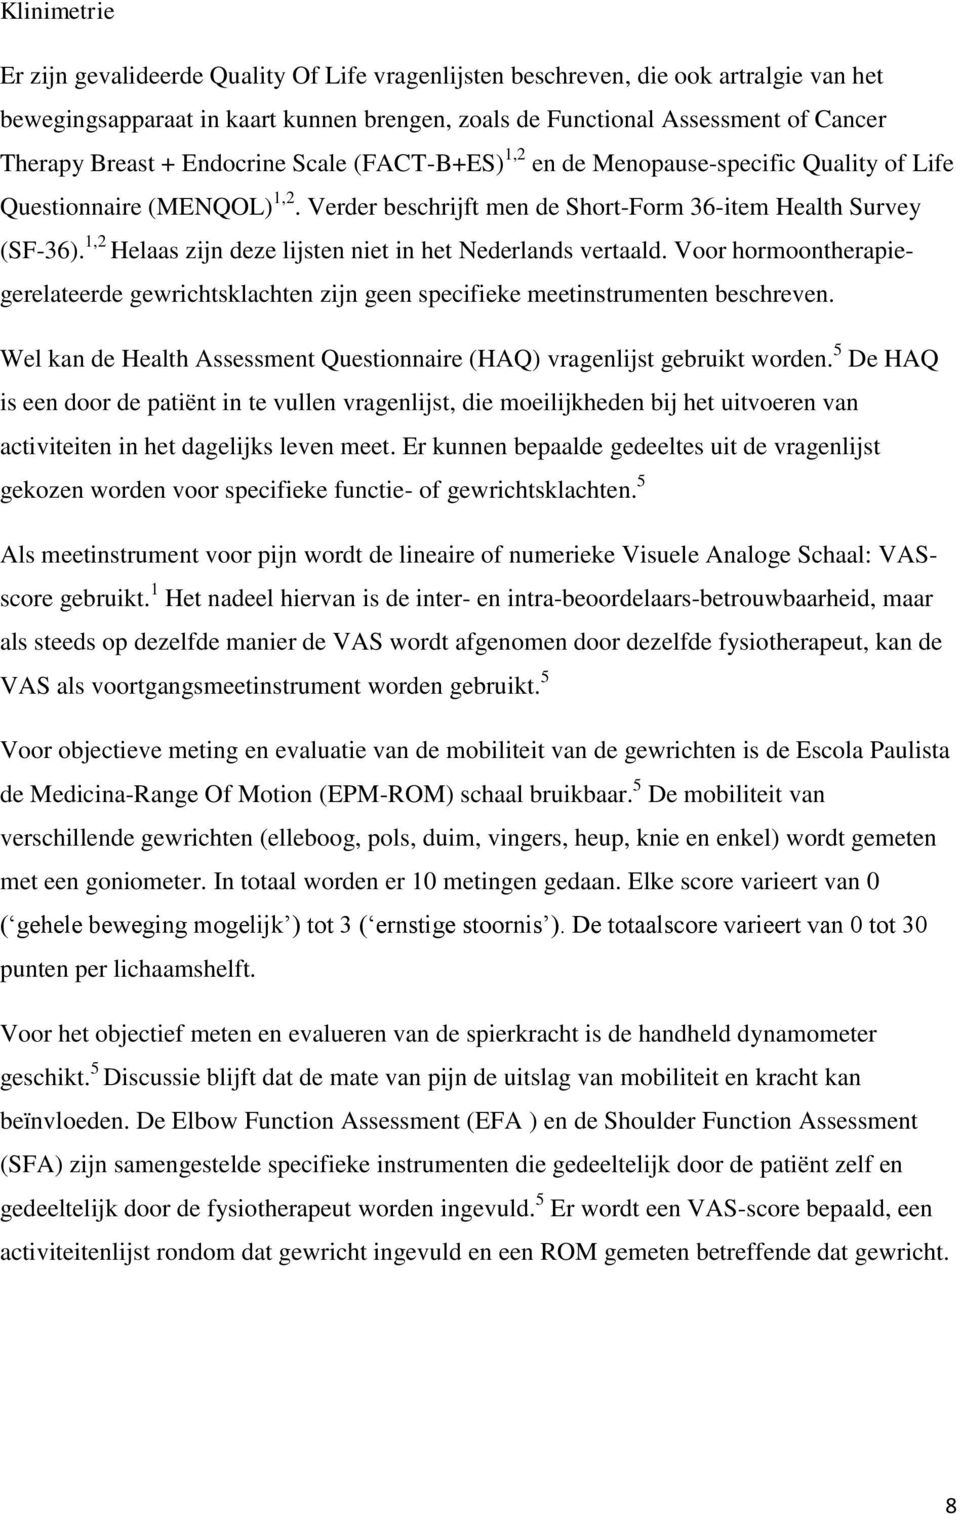 1,2 Helaas zijn deze lijsten niet in het Nederlands vertaald. Voor hormoontherapiegerelateerde gewrichtsklachten zijn geen specifieke meetinstrumenten beschreven.